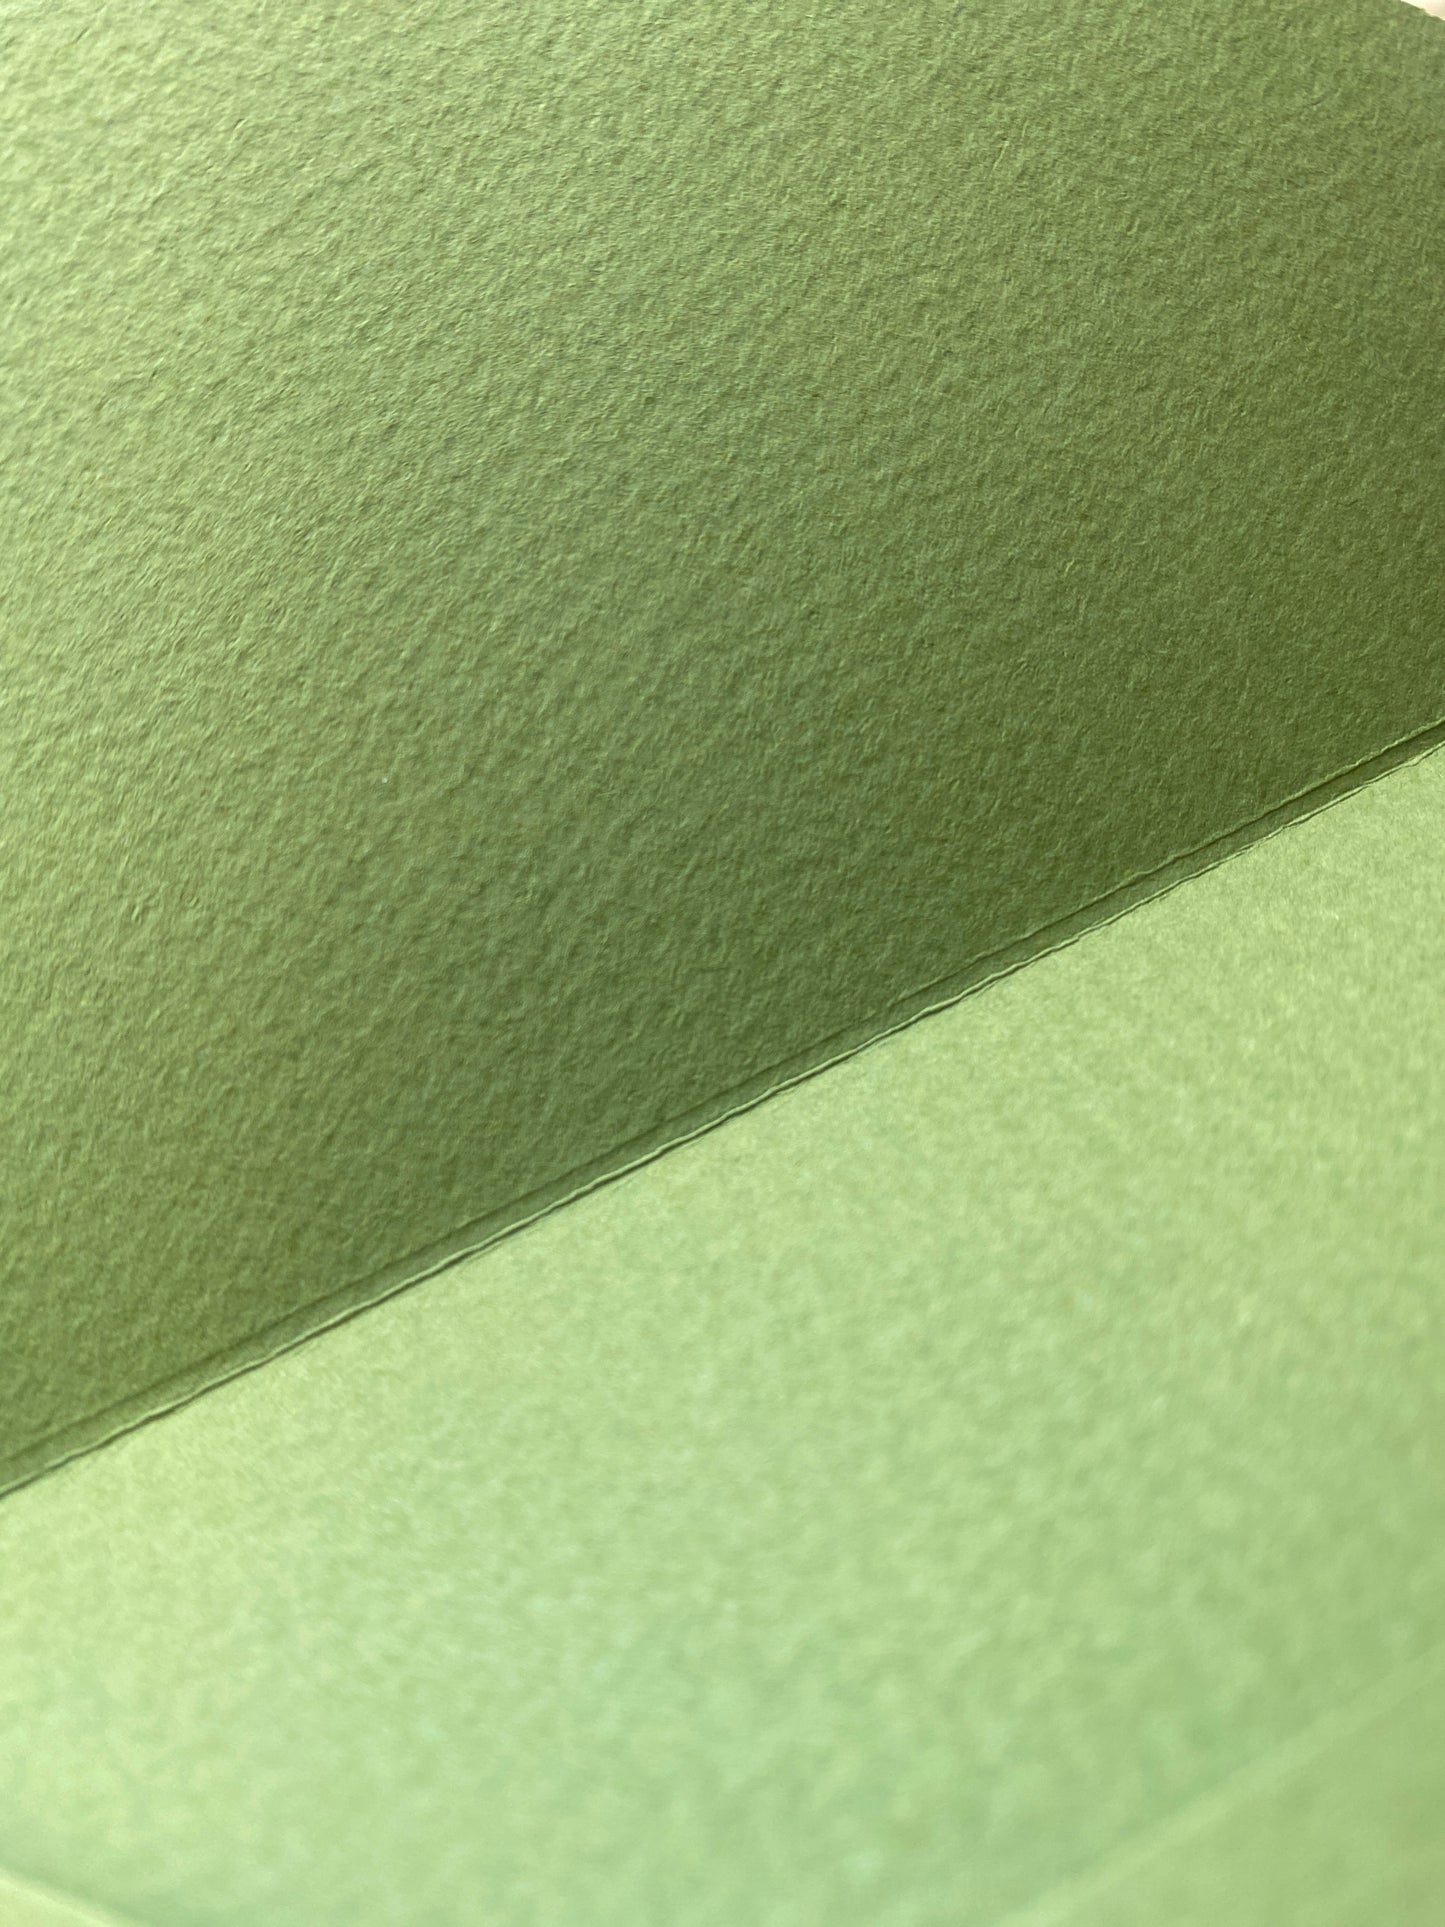 Obálka ze zeleného, vysokogramážního papíru s ražbou, detail z profilu vnitřní strana